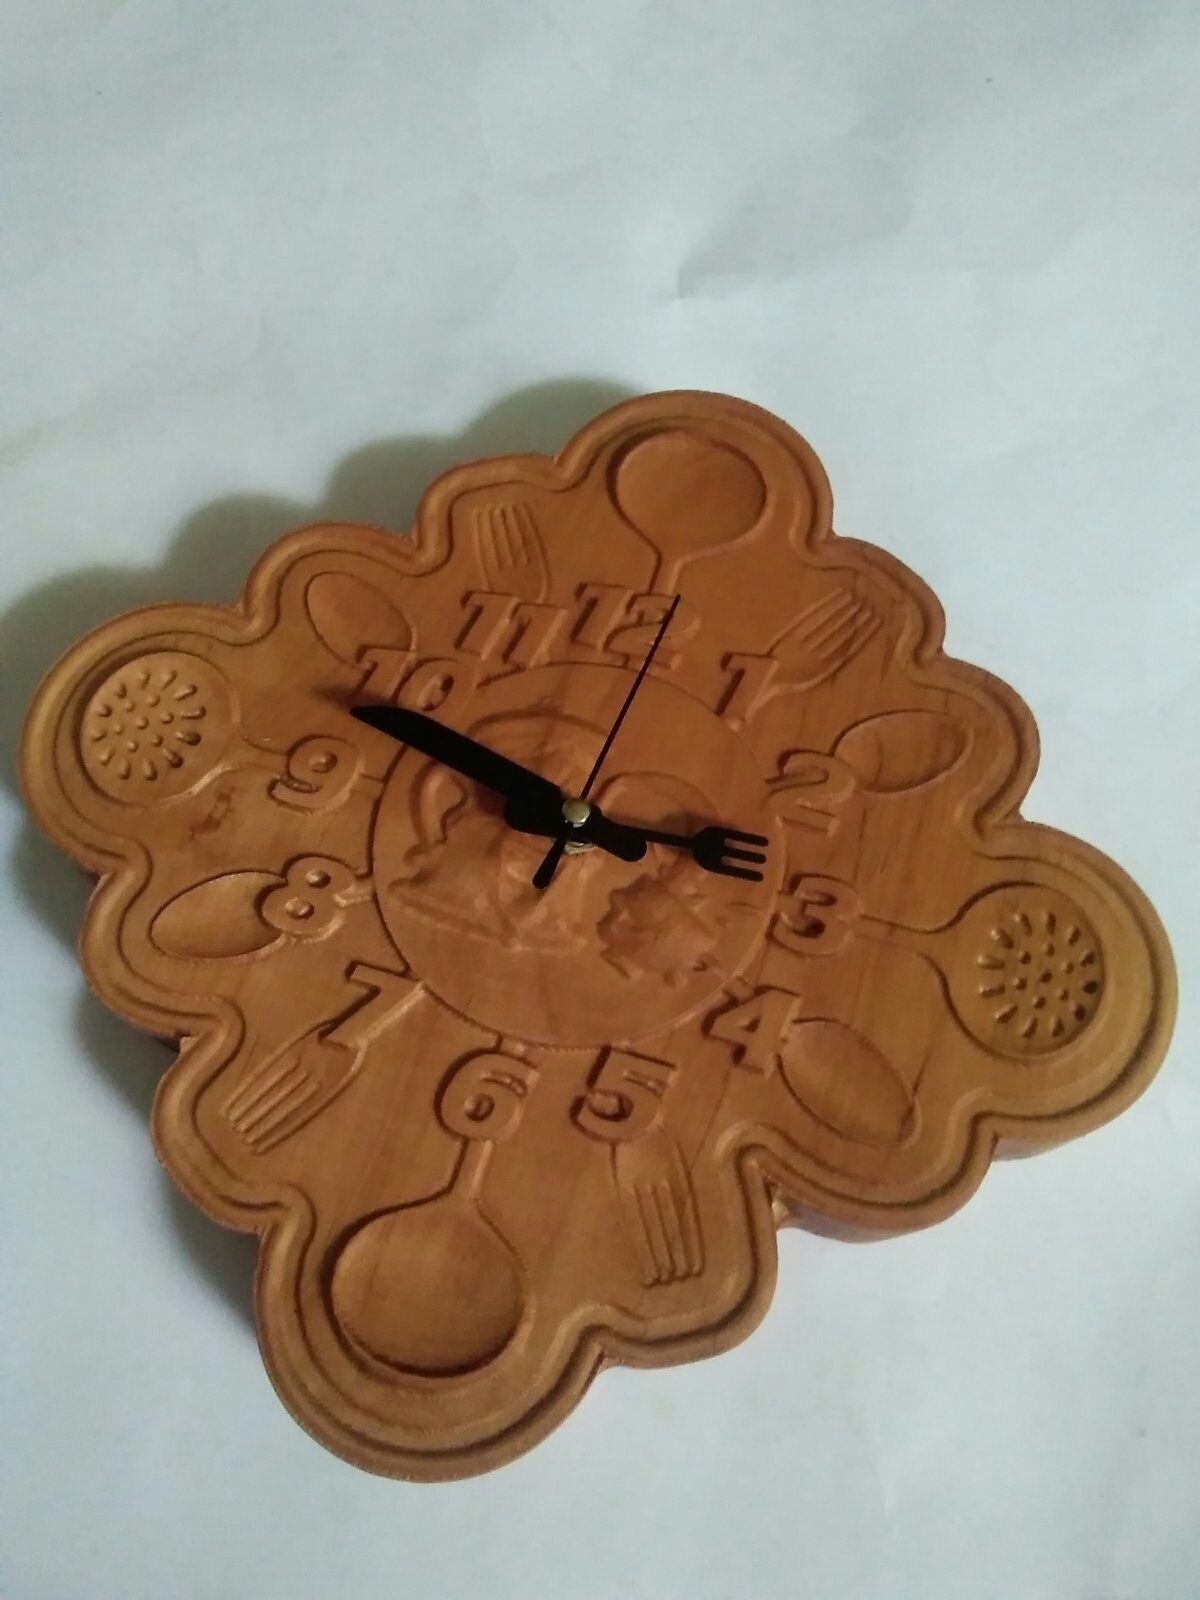 Часы из дерева (ольха)